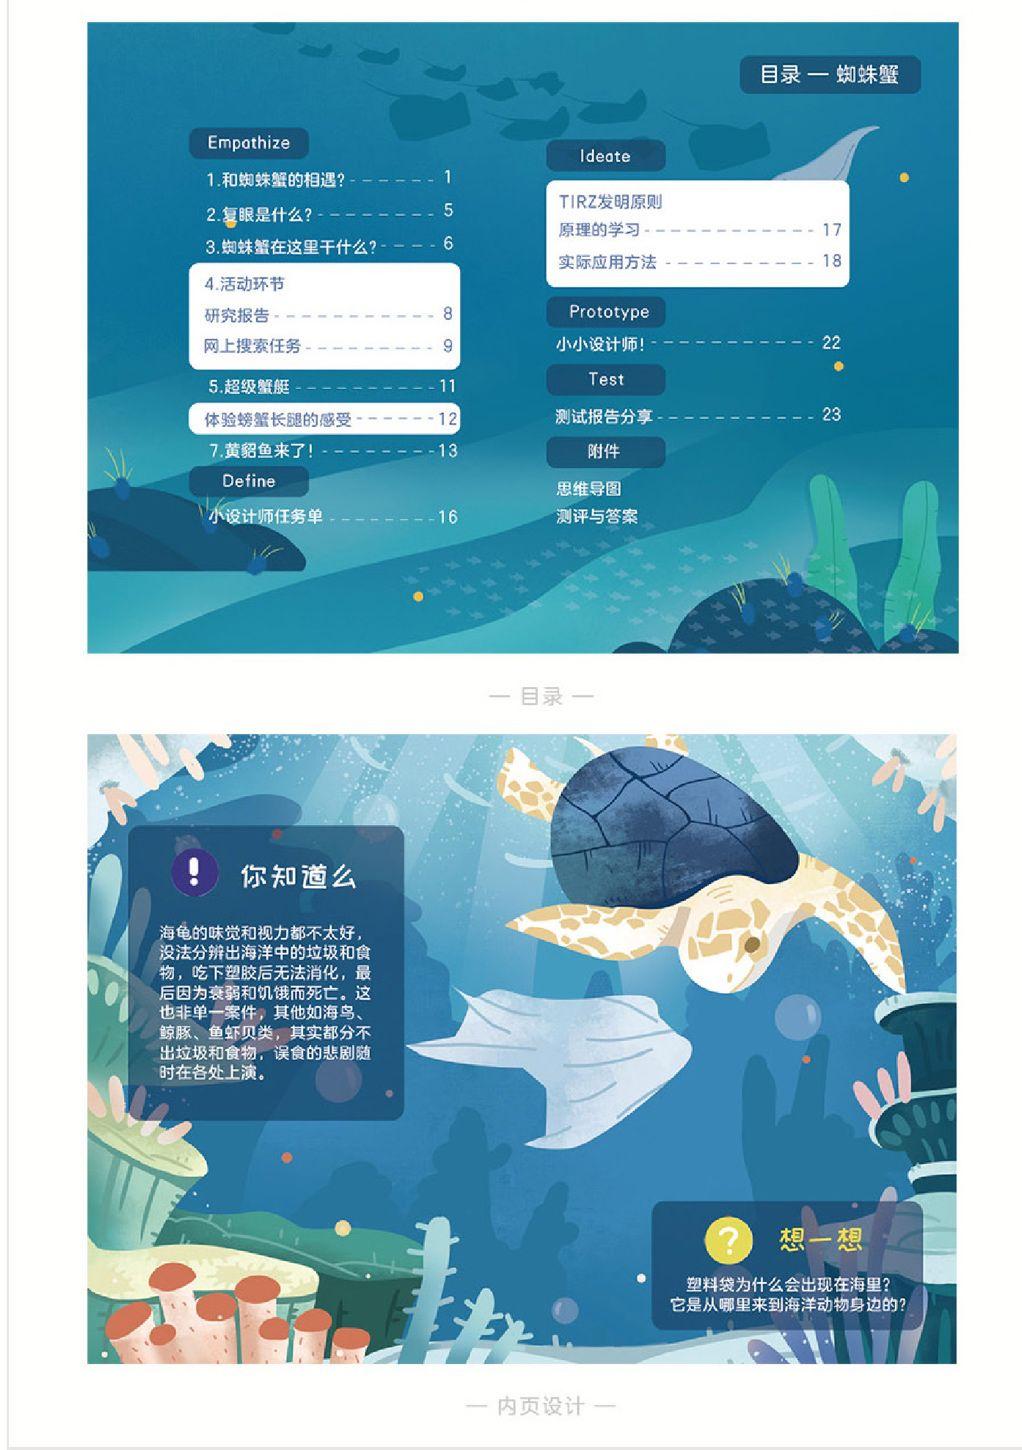 上海模具技术协会_福建省包装饮用水协会_上海包装技术协会